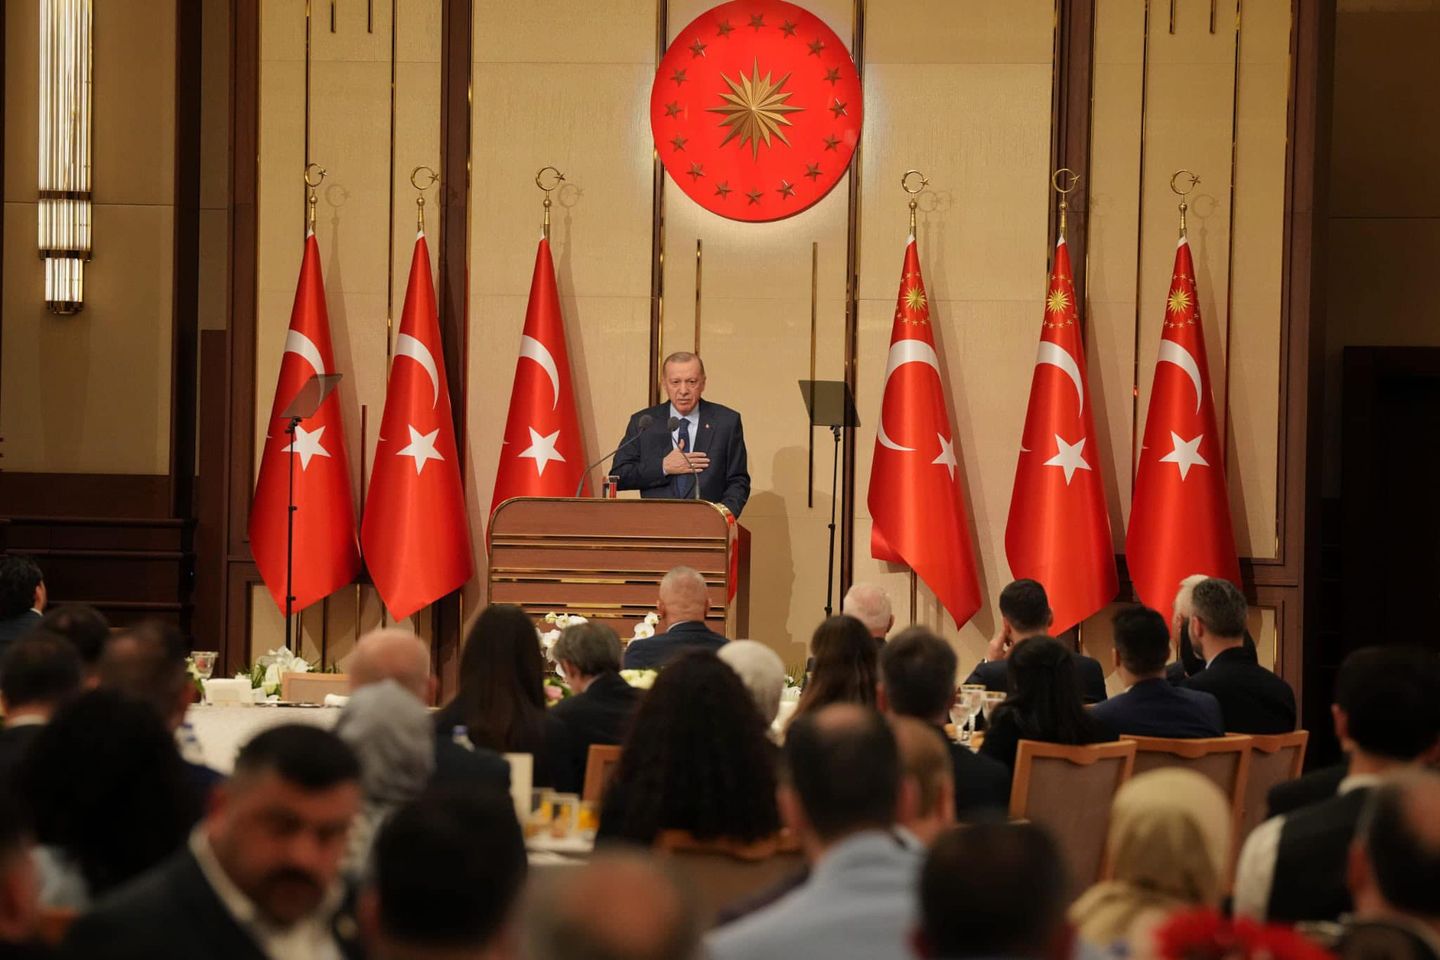 Kültür ve Turizm Bakanı Mehmet Ersoy, Uluslararası Demokratlar Birliği (UID) tarafından düzenlenen etkinlikte katılımcılarla buluştu.